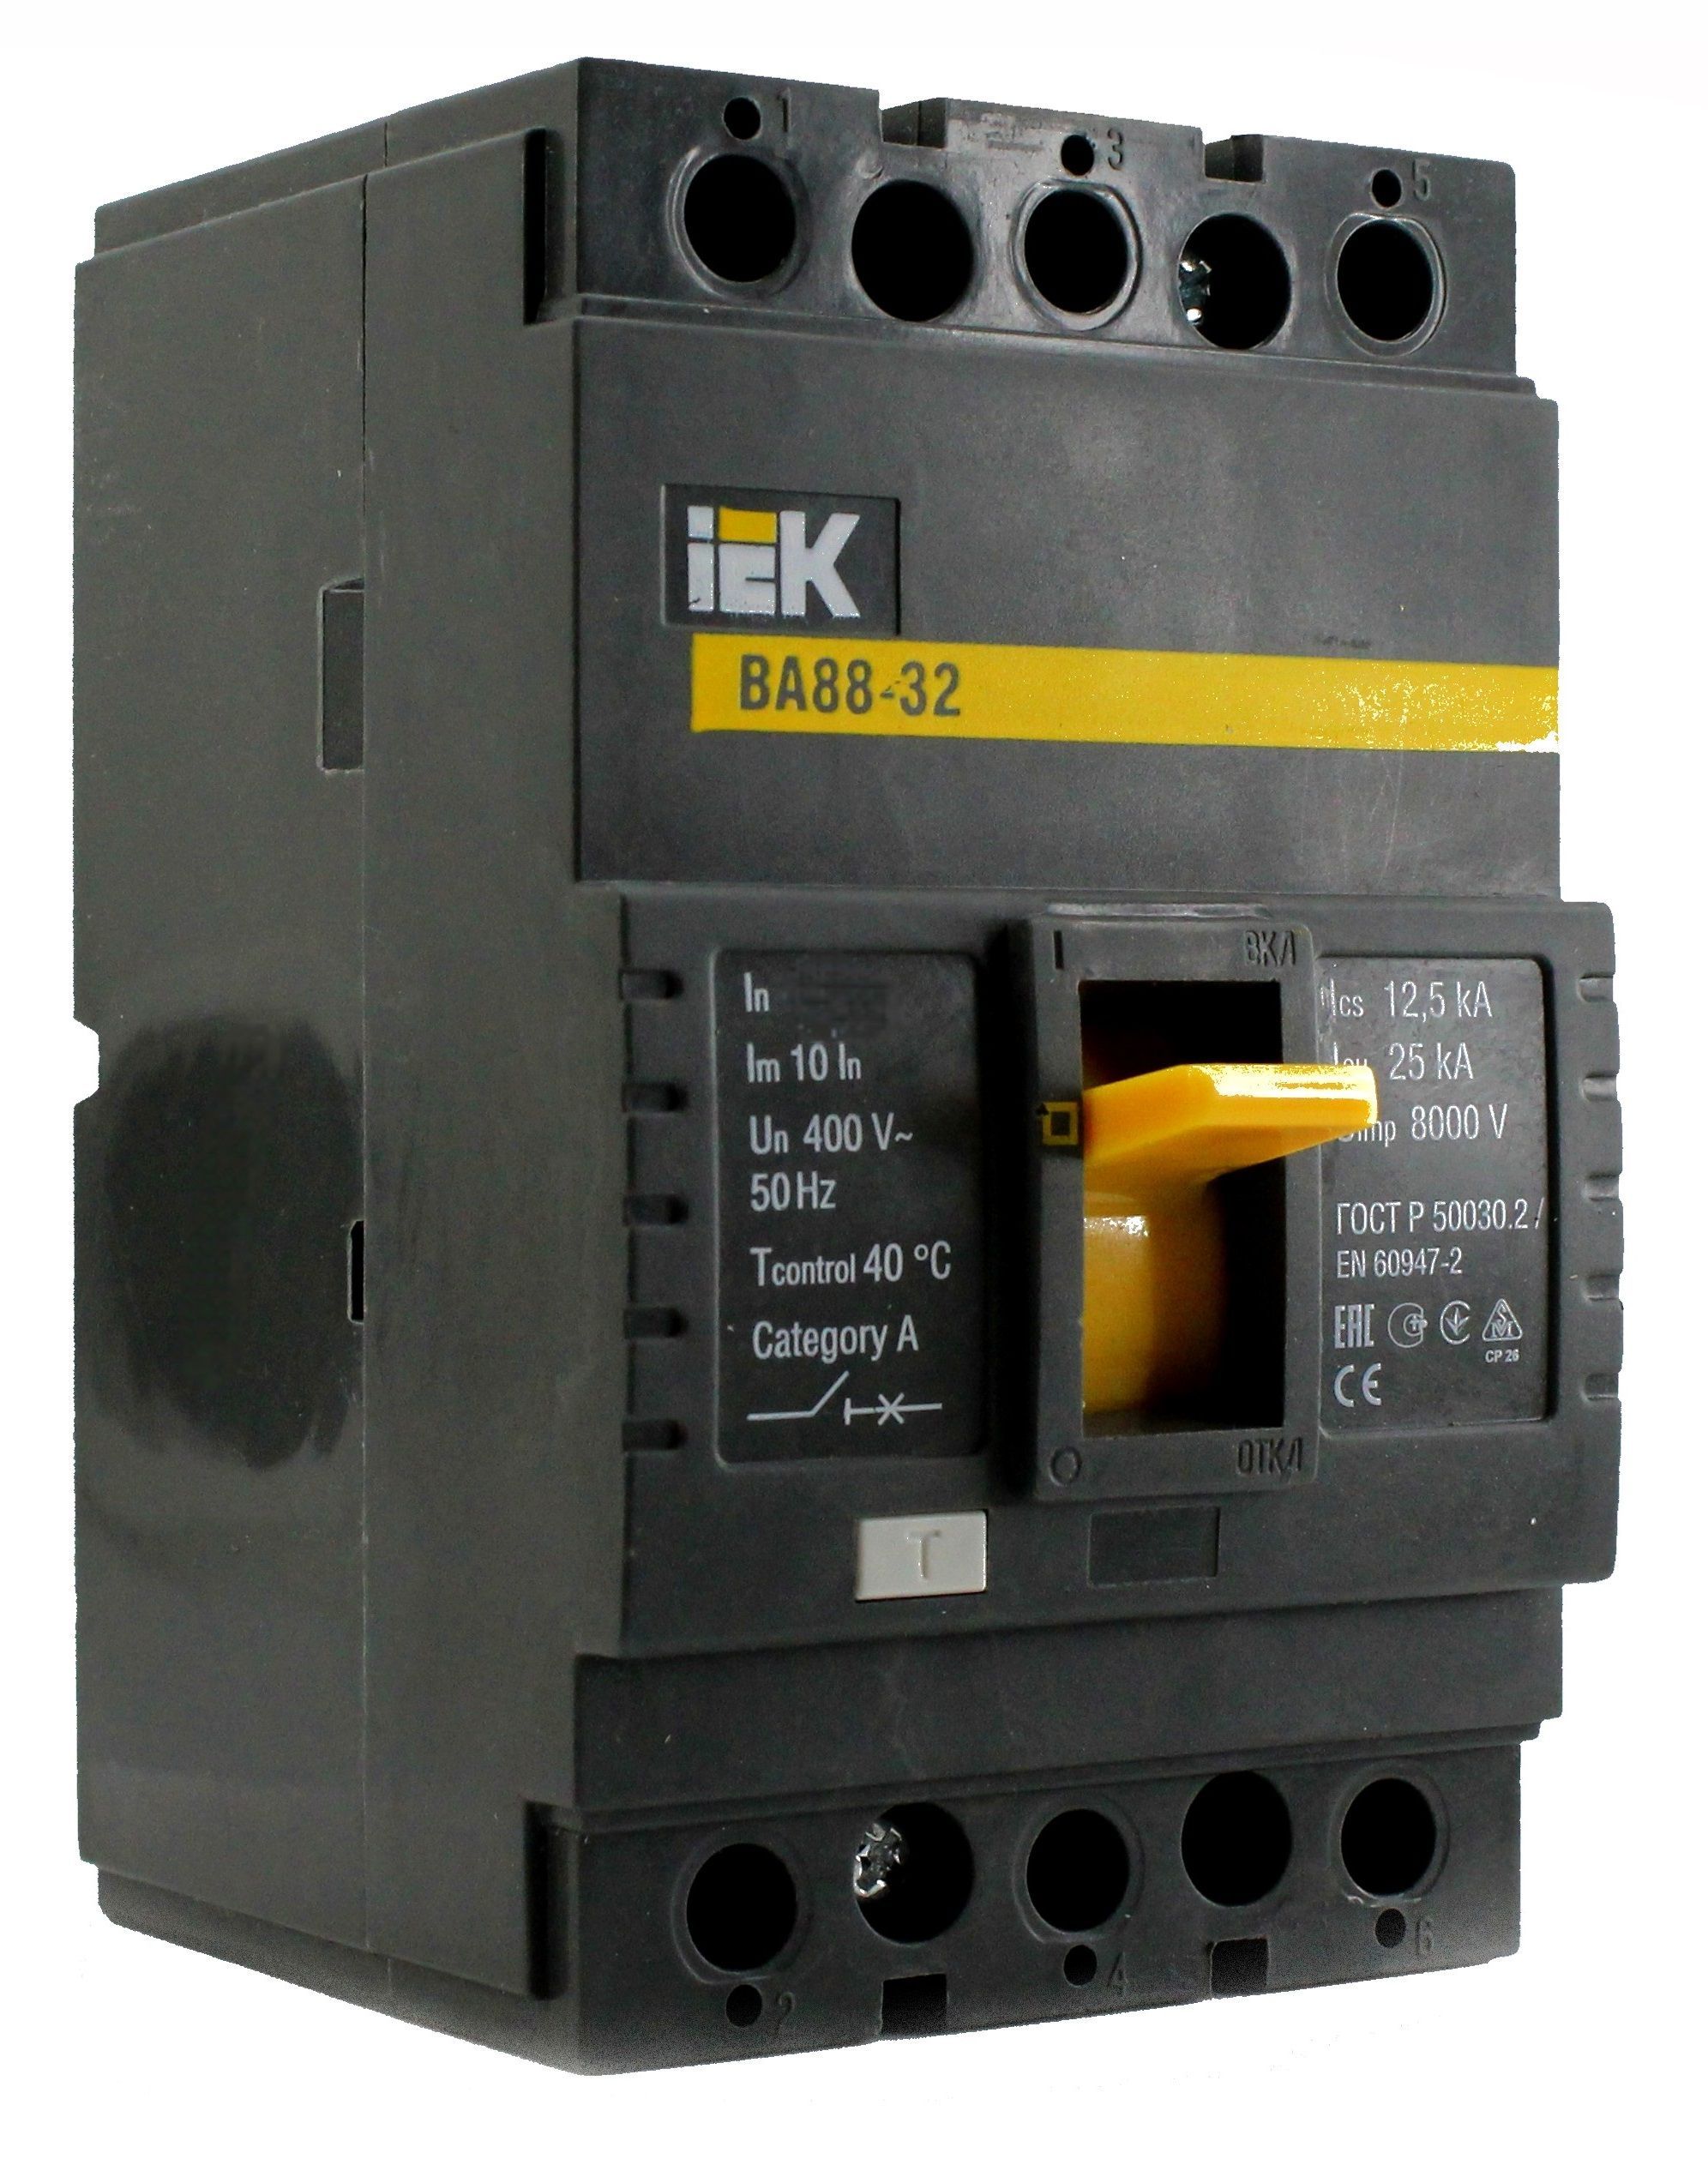 IEK ba88-40 500a. Выключатель автоматический ва 88-32 3р 80а 25ка ТДМ. Ba88-32 50а. Распределительный аппарат защиты ва 88-33-32а. Выключатель автоматический ва88 125а